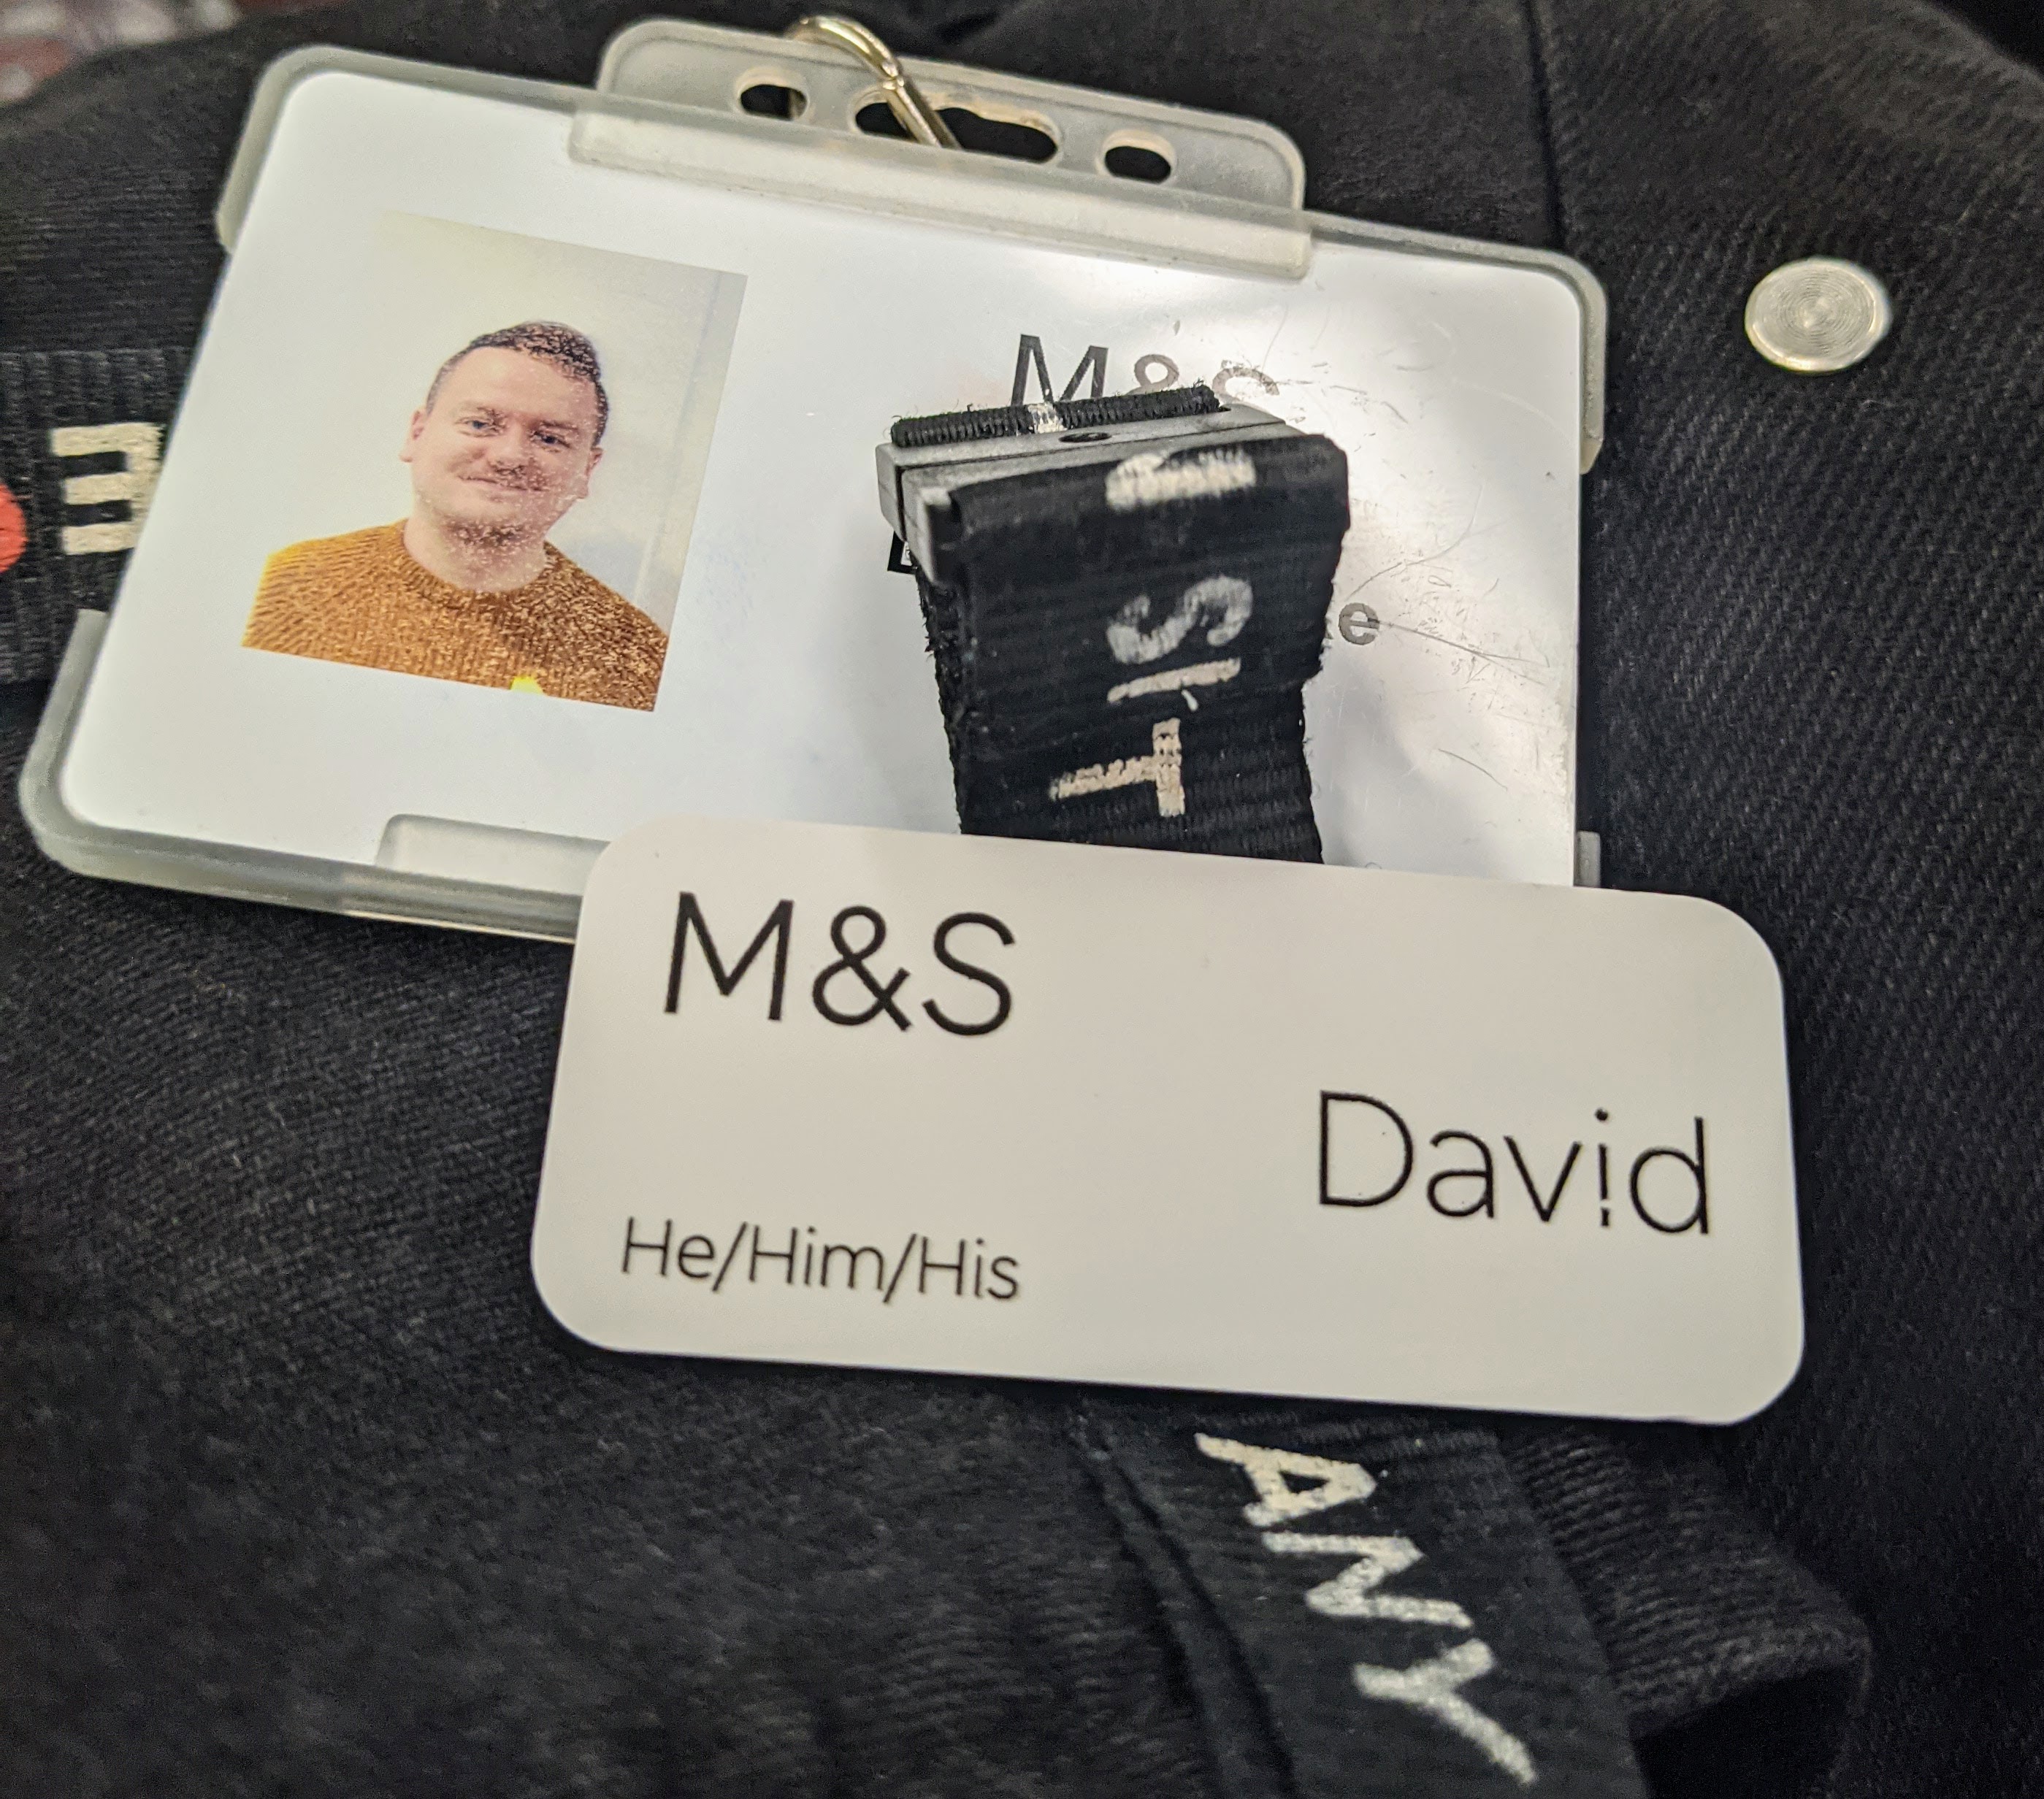 David Parke's M&S name badge